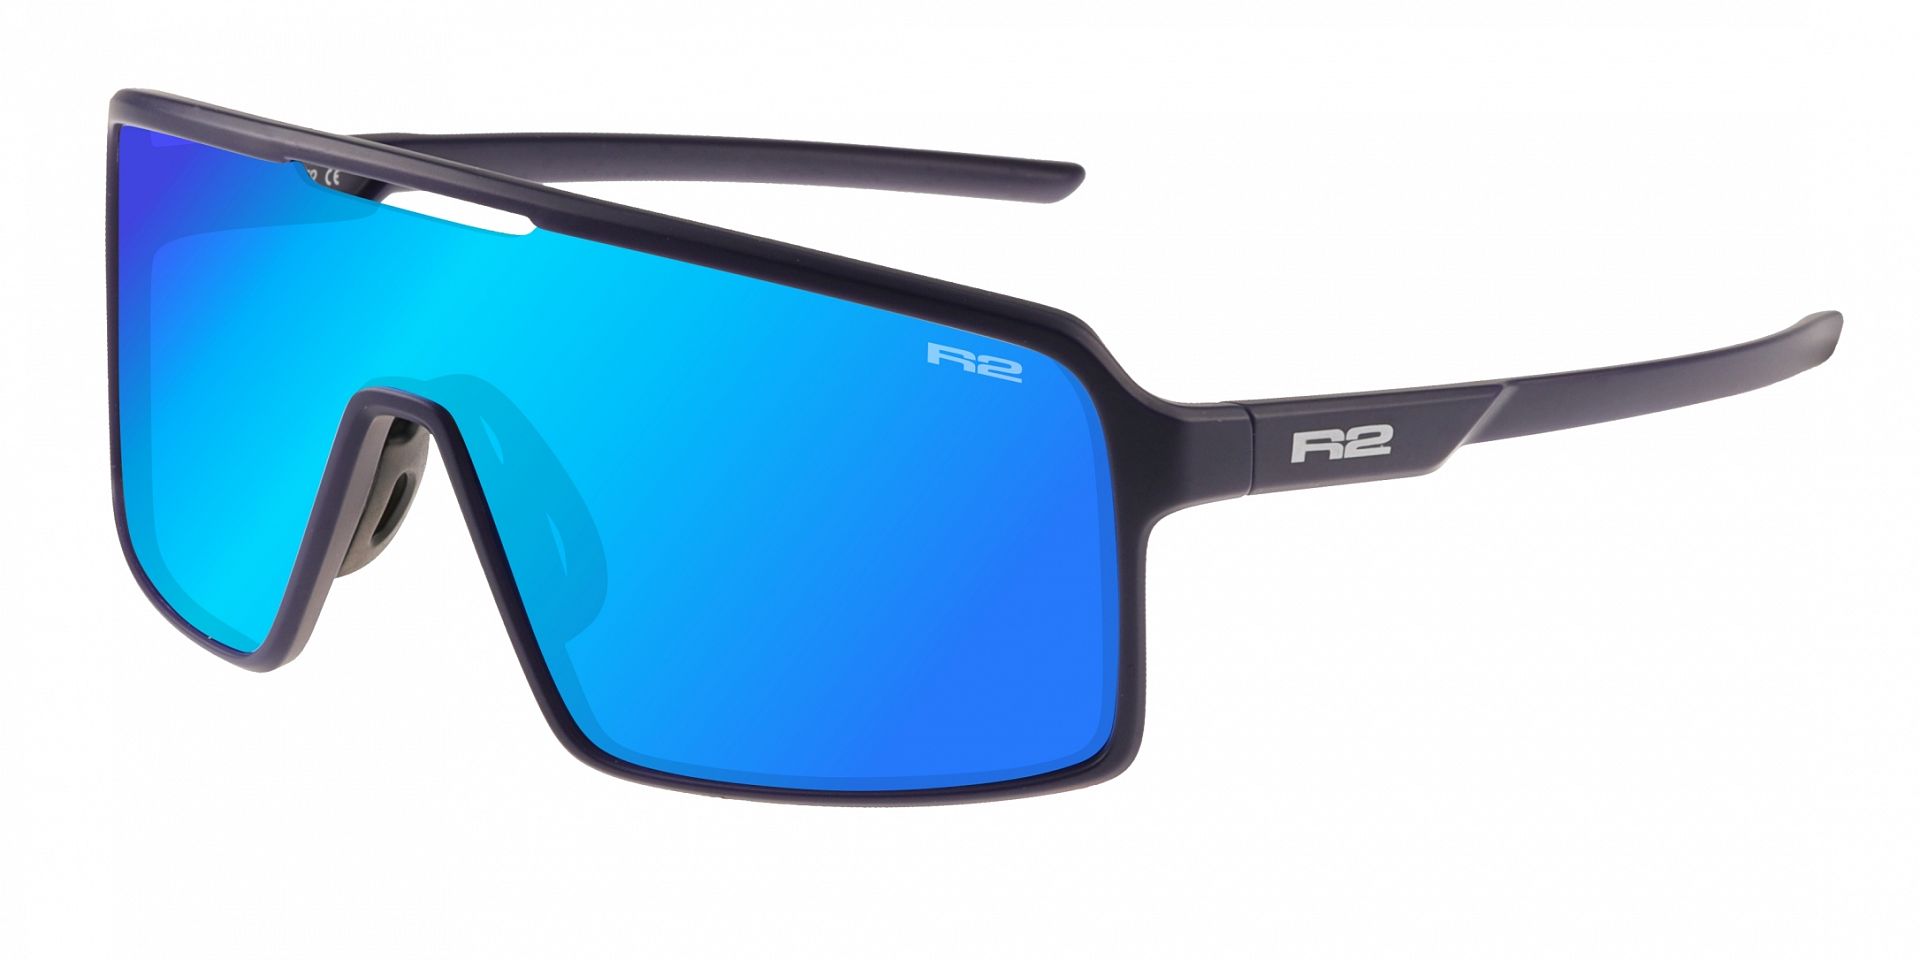 Sportovní brýle R2 WINNER AT107C modrá